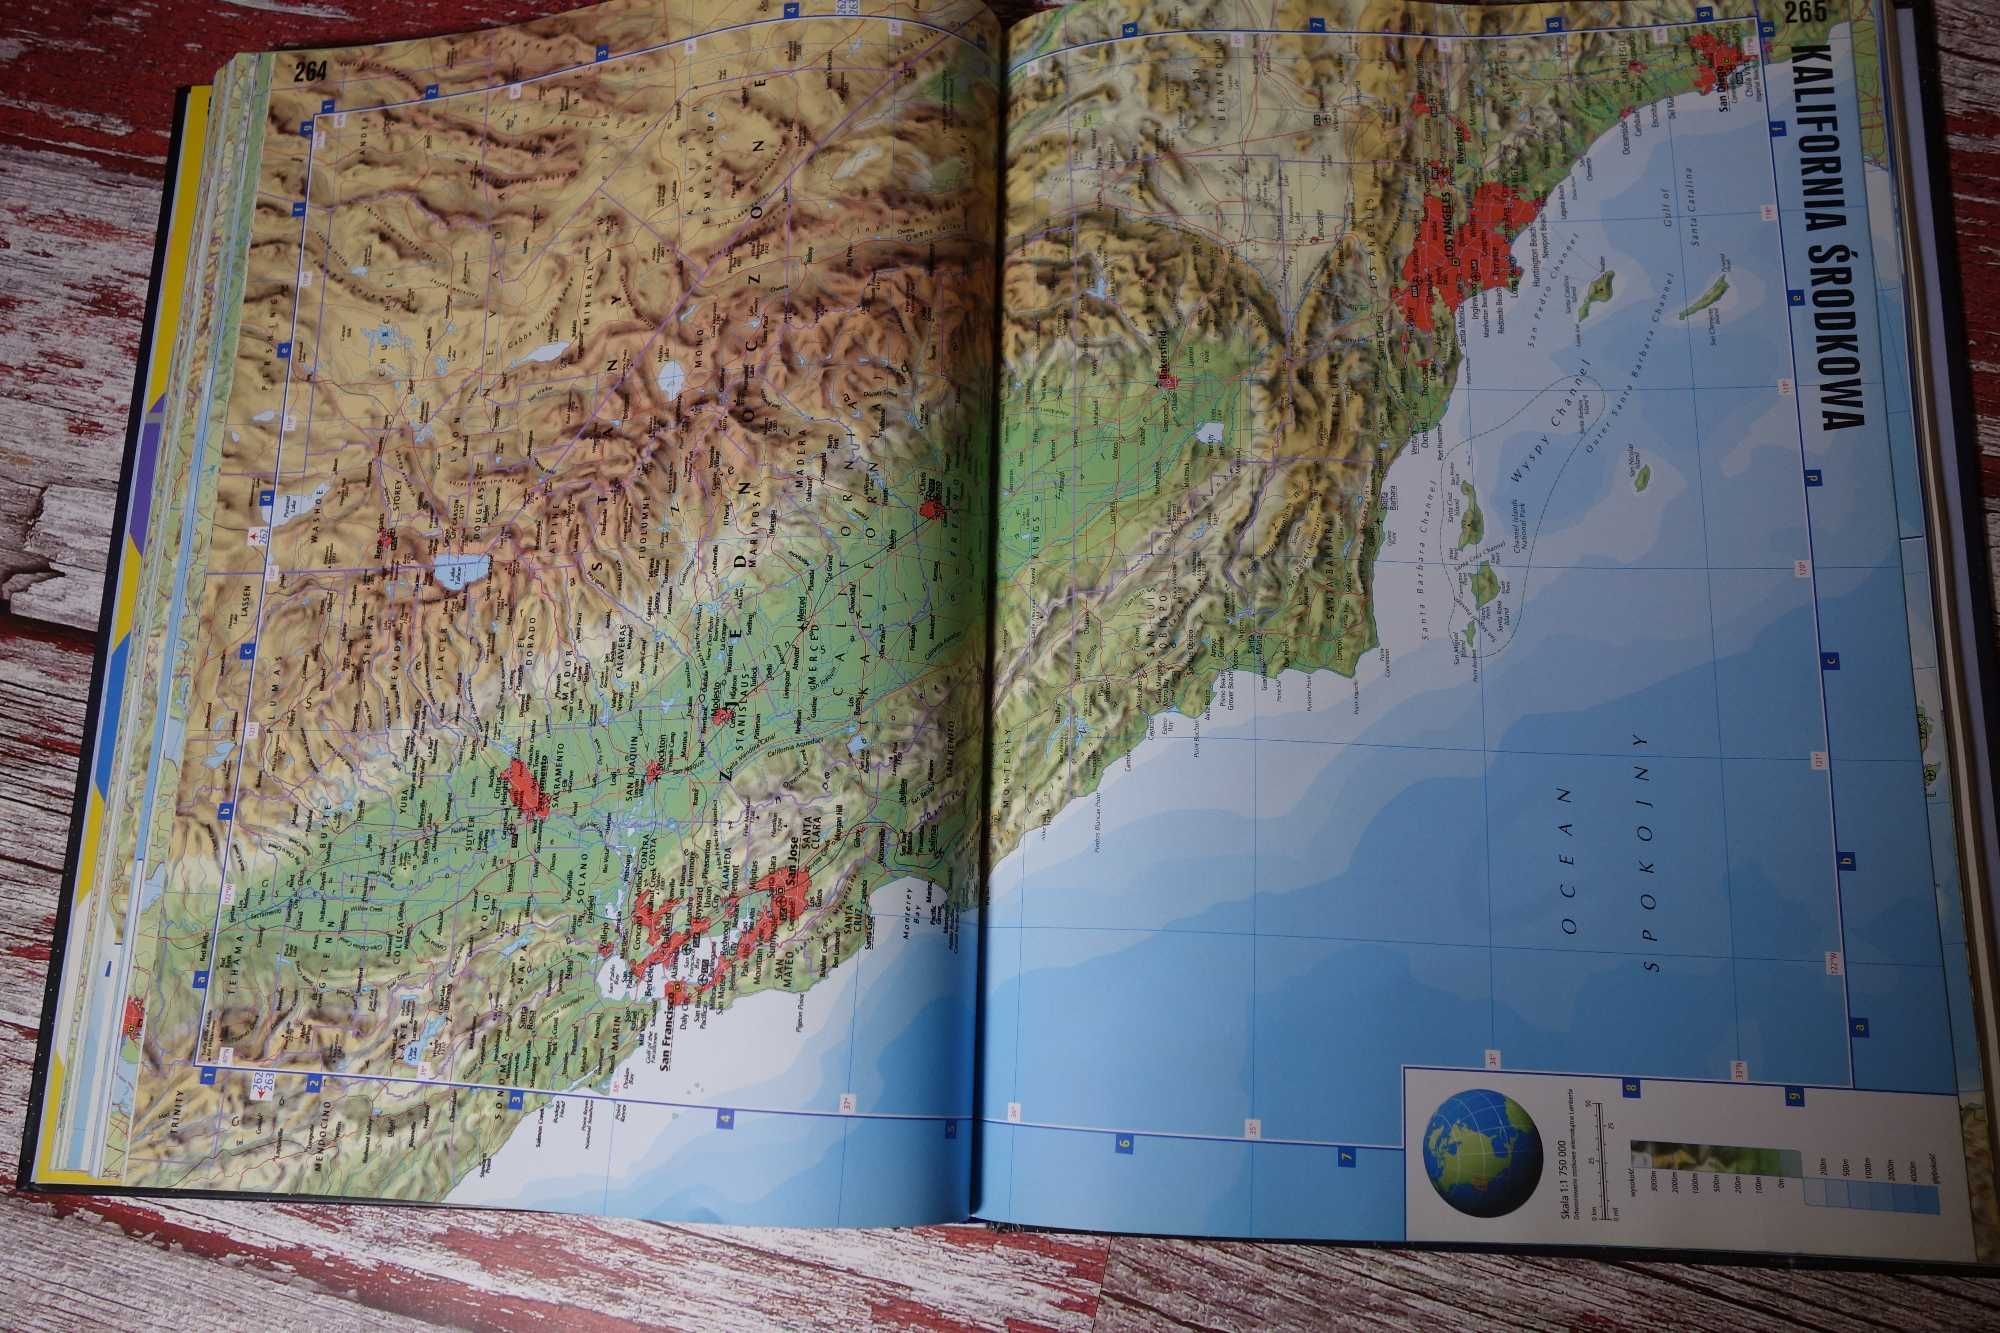 ATLAS świata, 250 SZCZEGÓŁOWYCH map, 350 ilustracji, rozkładane mapy-5